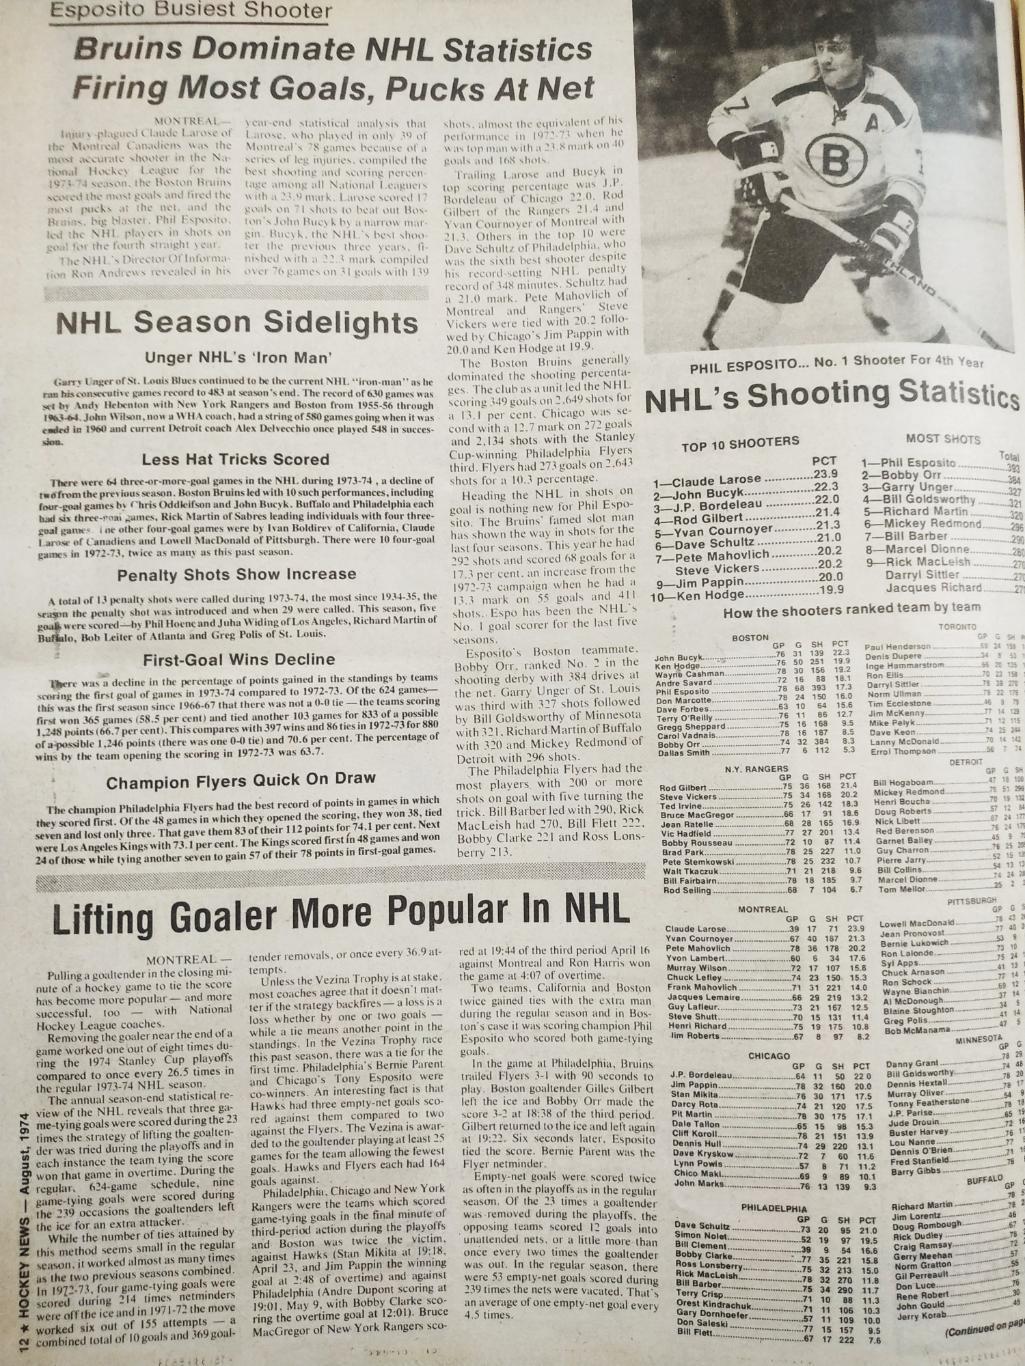 ХОККЕЙ ЖУРНАЛ ЕЖЕНЕДЕЛЬНИК НХЛ НОВОСТИ ХОККЕЯ AUGUST 1974 NHL THE HOCKEY NEWS 3